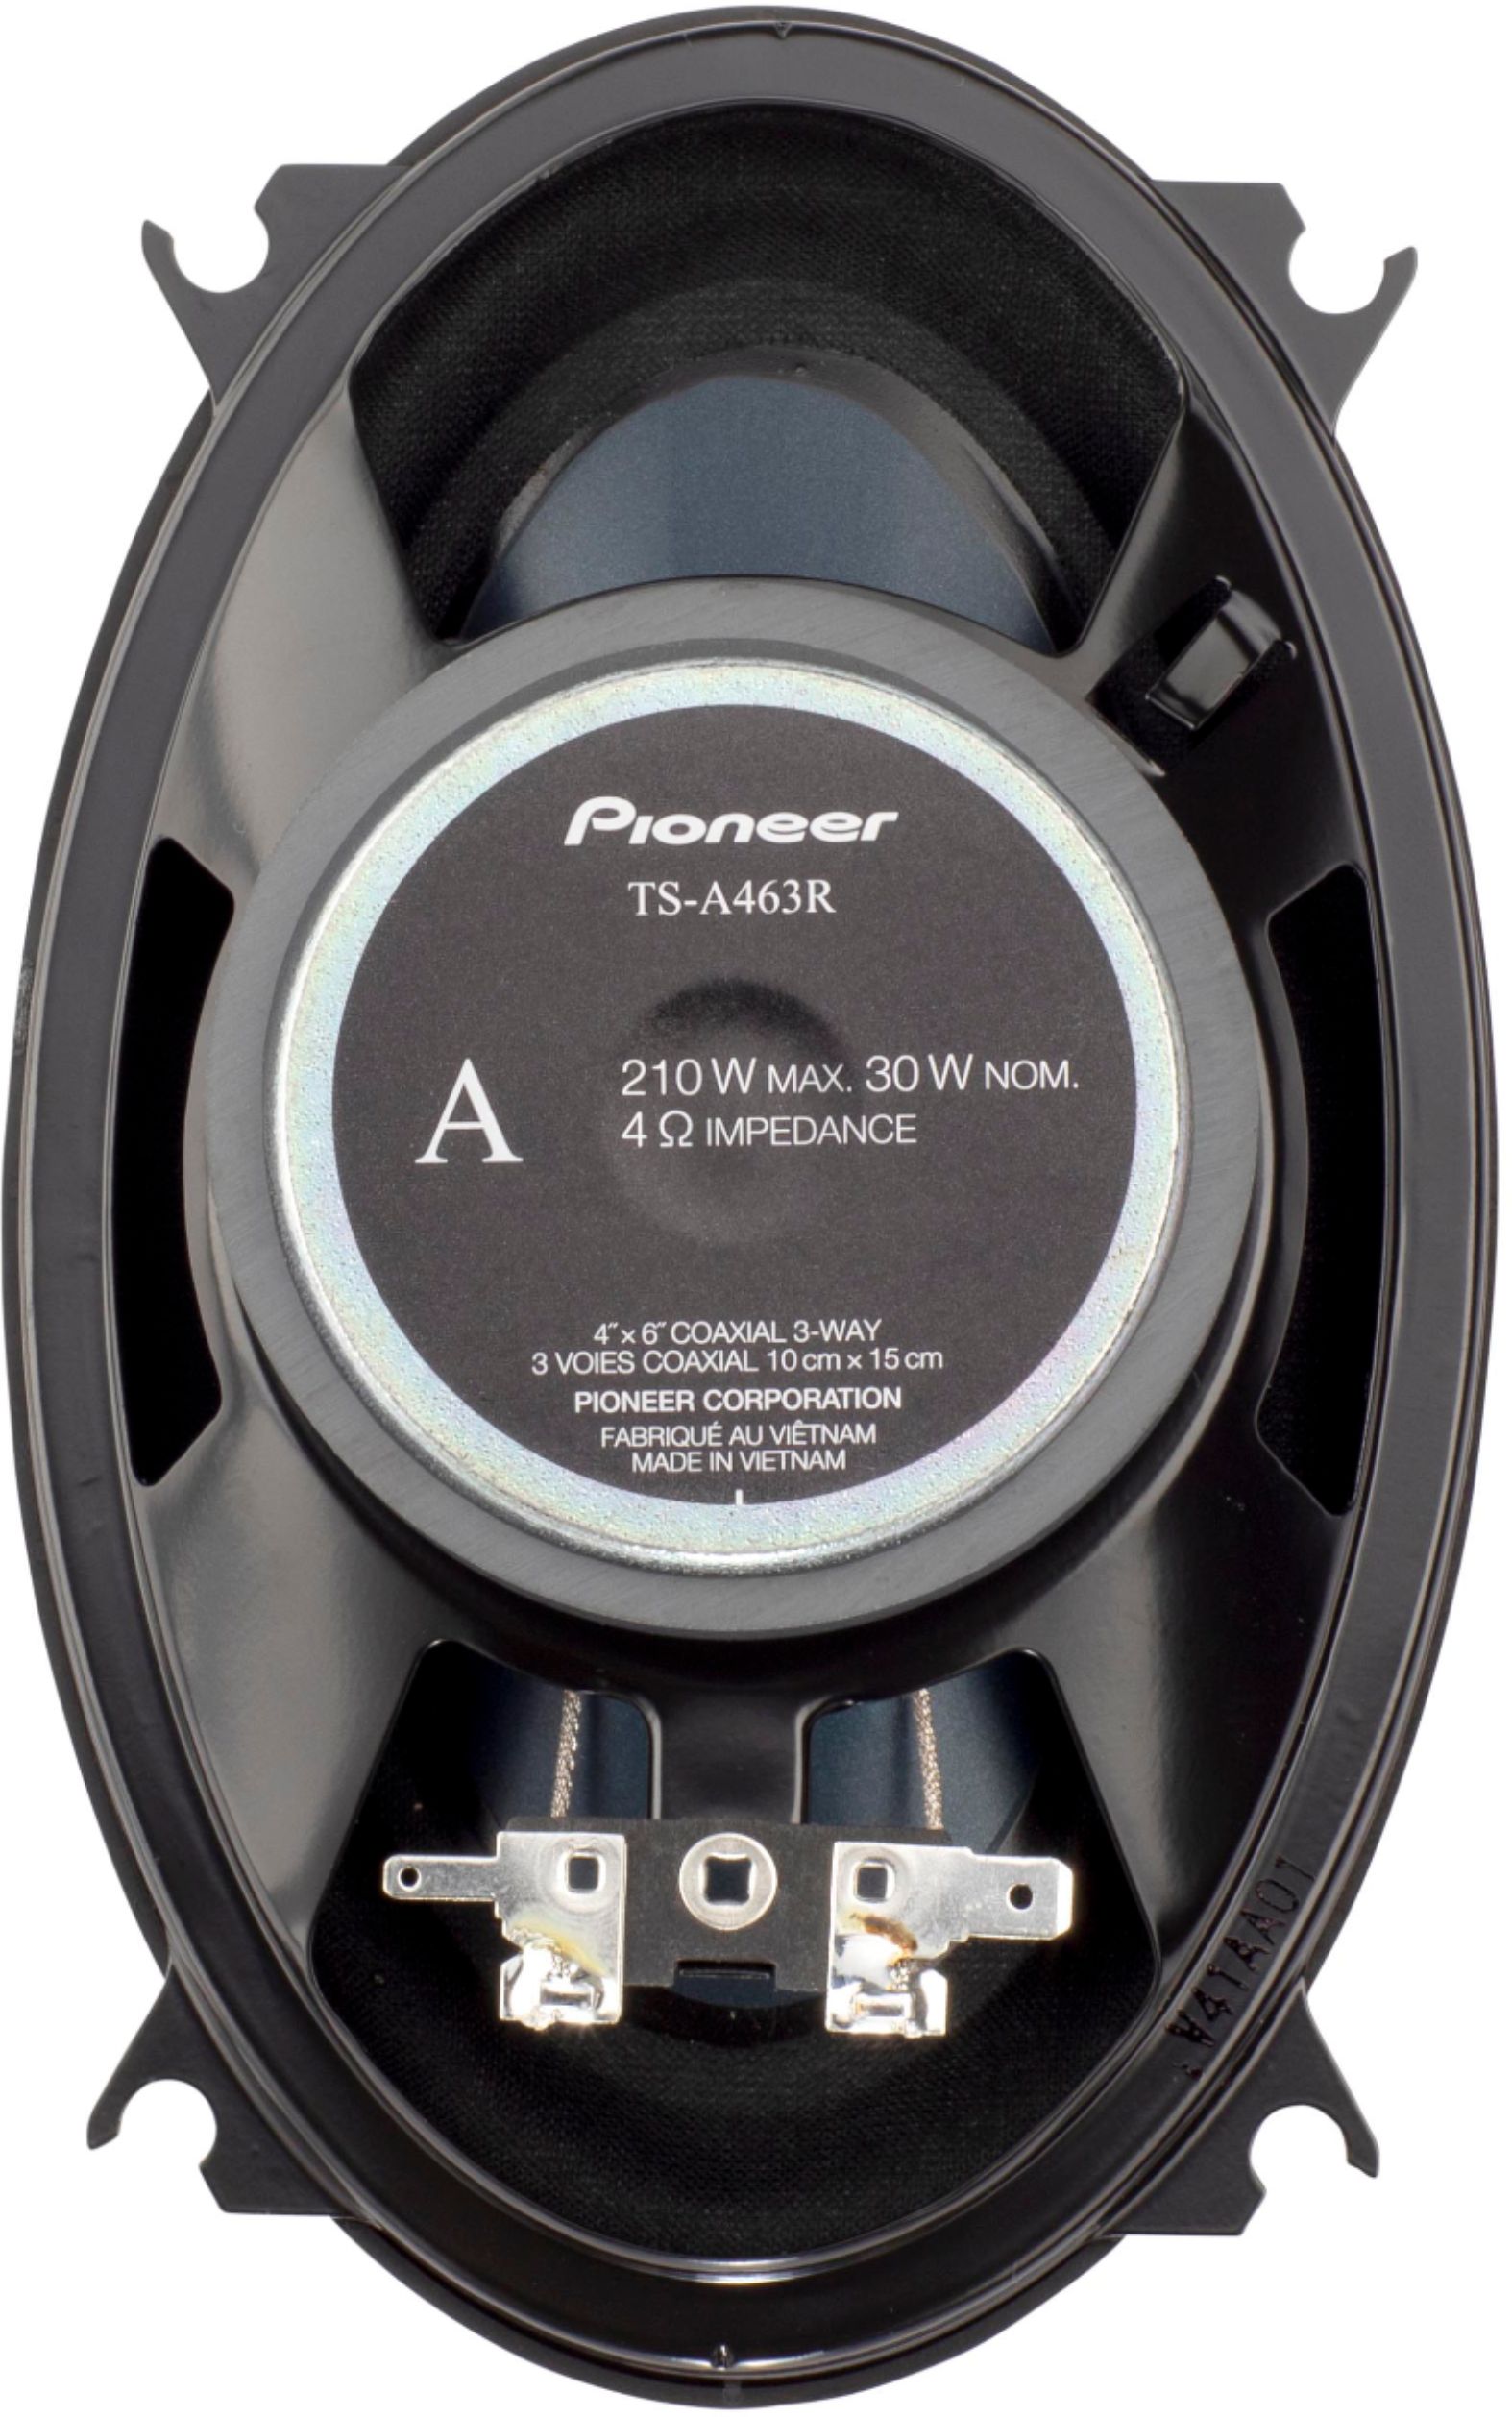 beweeglijkheid Gelijkenis Sterkte Pioneer 4" x 6" 3-way , 210 W Max Power Coaxial Speakers (pair) BLUE  TS-A463R - Best Buy